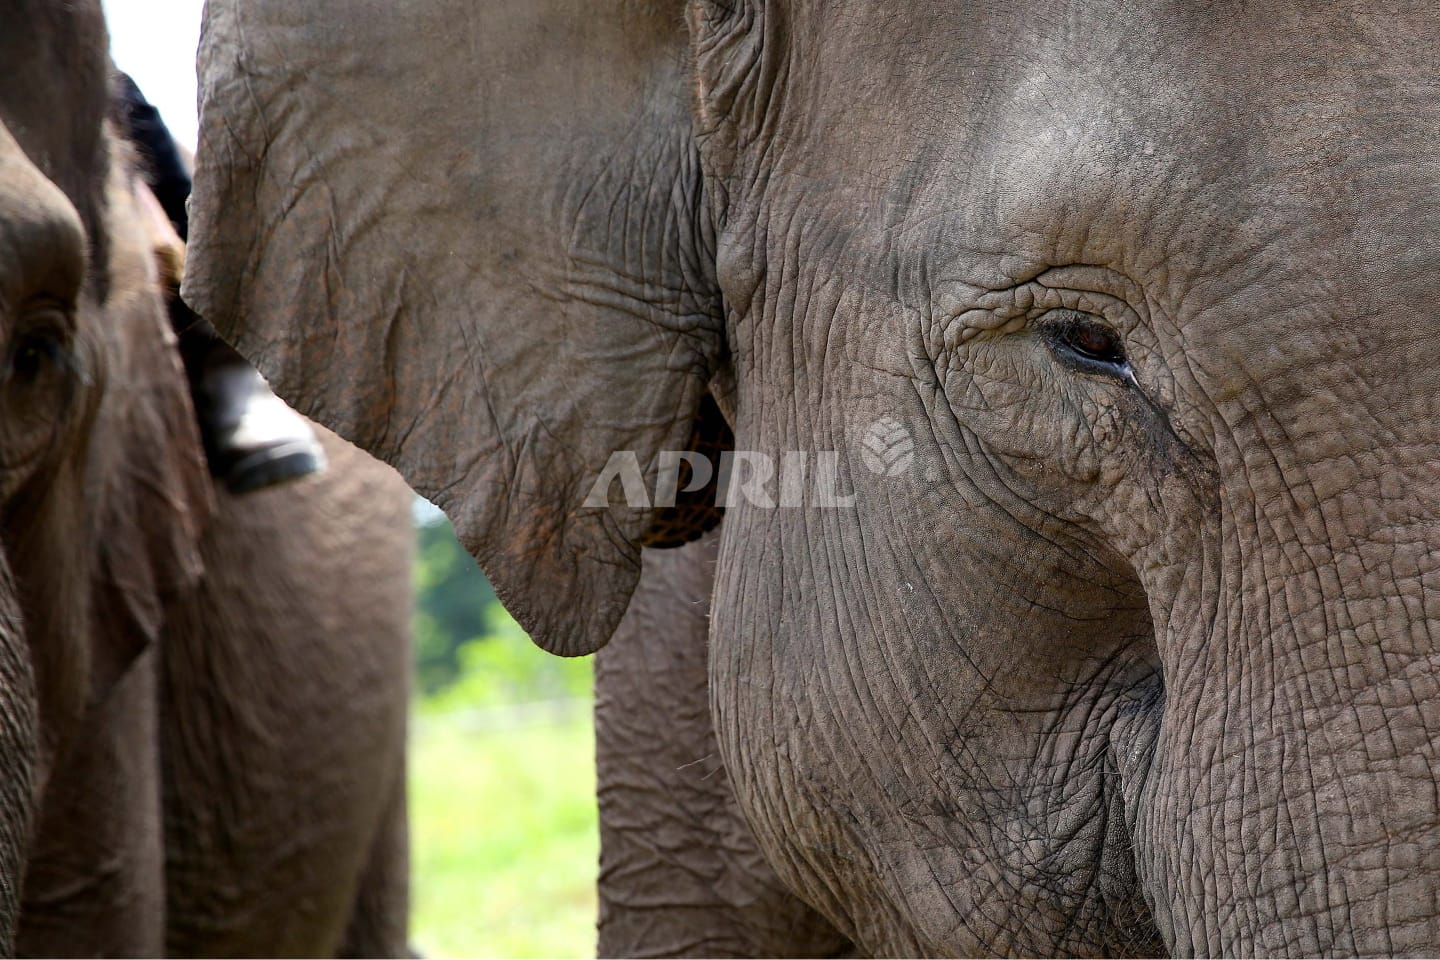 RAPP Turut Berpartisipasi Melindungi Gajah Sumatera yang Hampir Punah